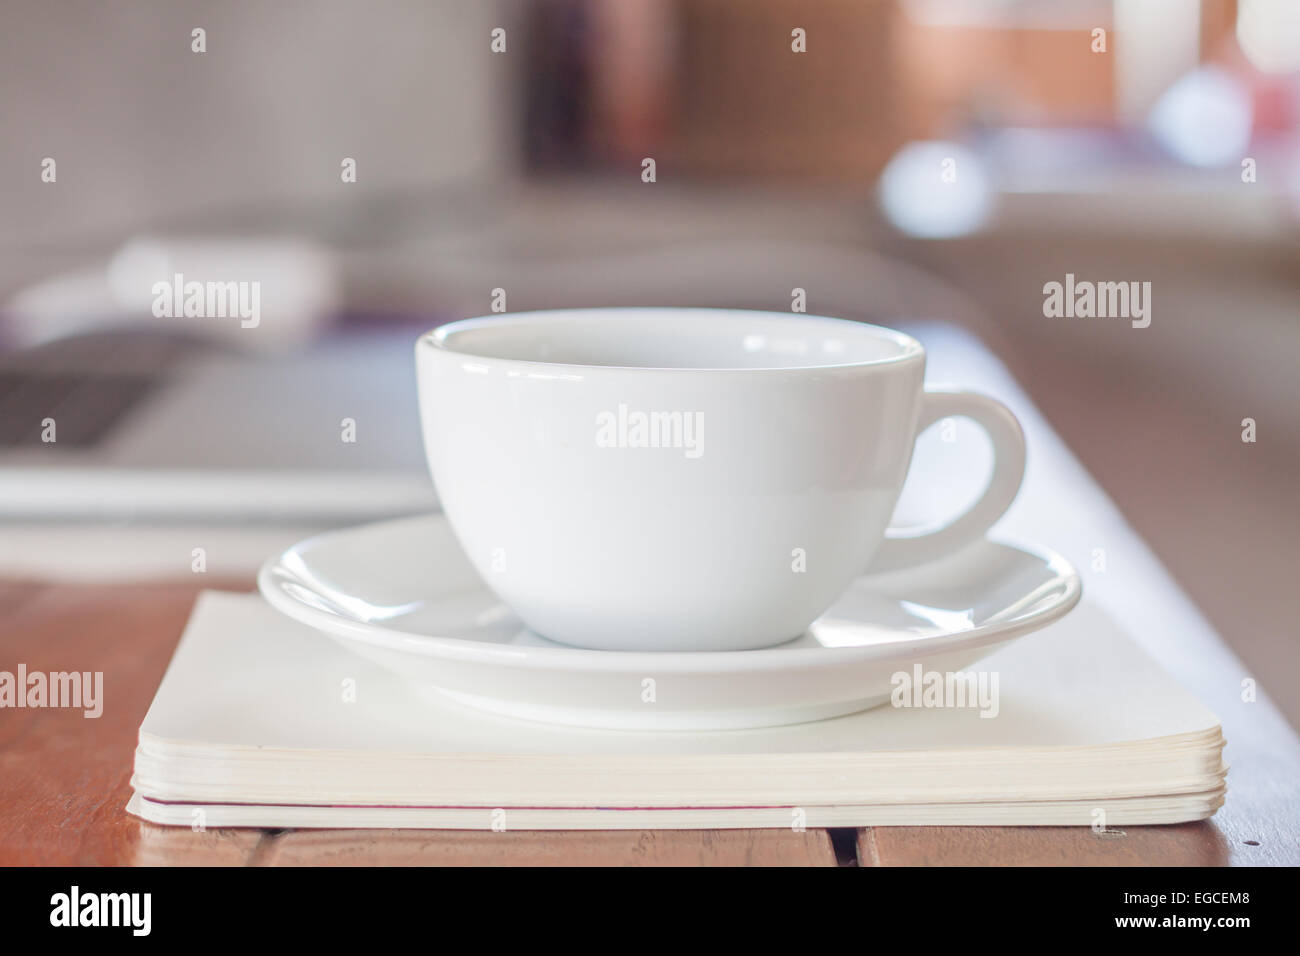 Tasse de café blanc sur la station de travail, stock photo Banque D'Images